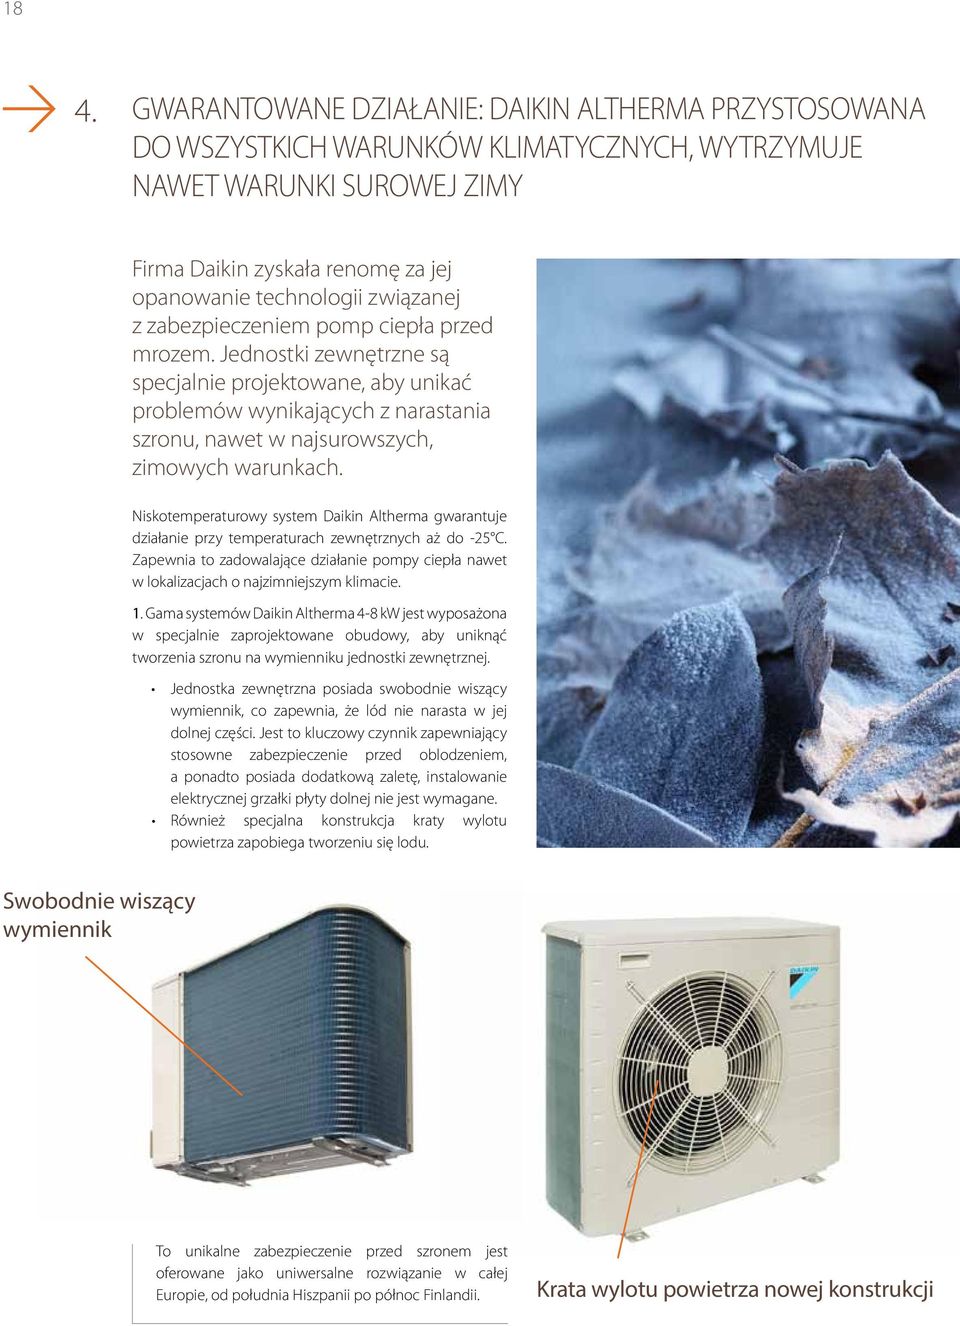 Niskotemperaturowy system Daikin Altherma gwarantuje działanie przy temperaturach zewnętrznych aż do -25 C.